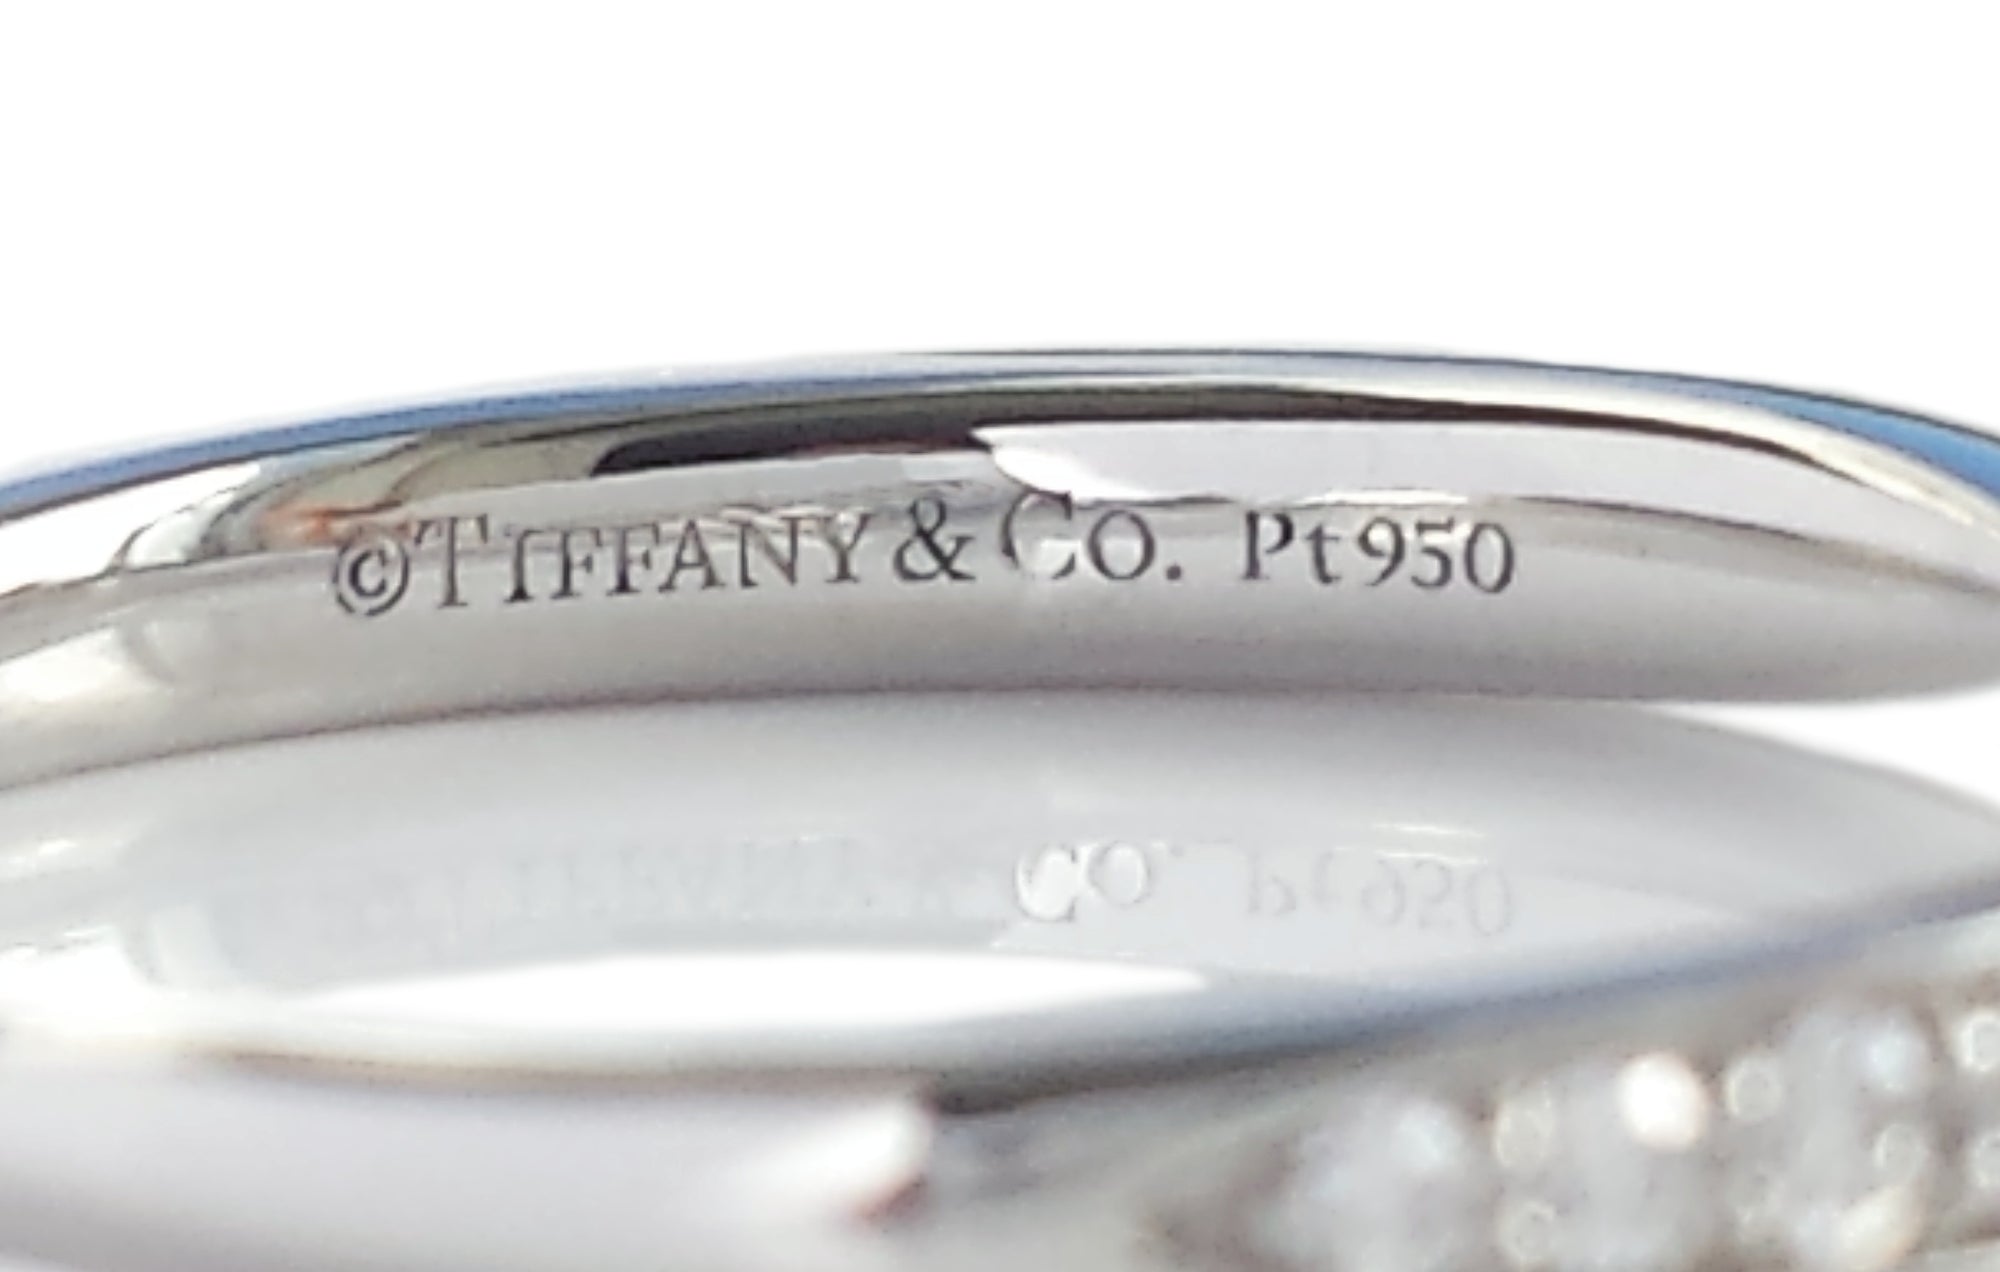 Tiffany & Co. Harmony® 0.23ct Diamond Wedding Band Ring